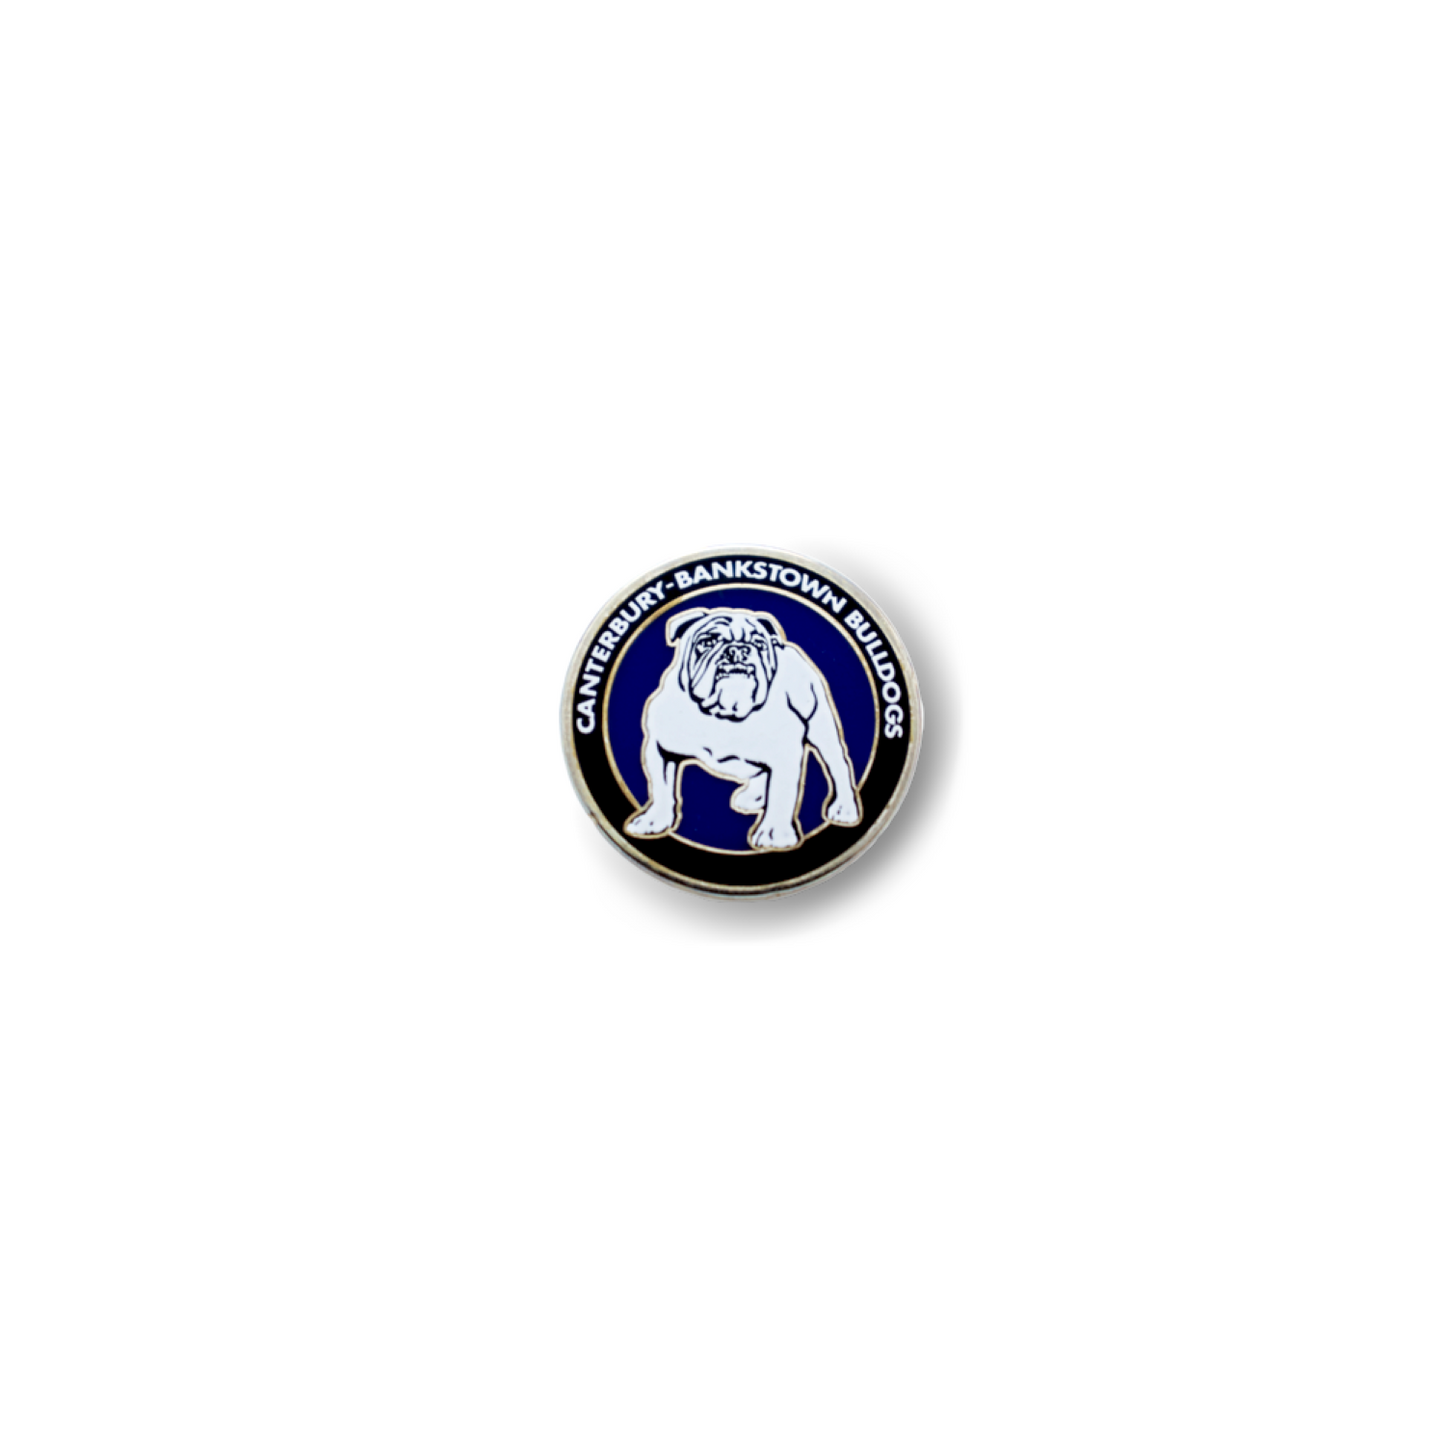 Canterbury-Bankstown Bulldogs Heritage Pin